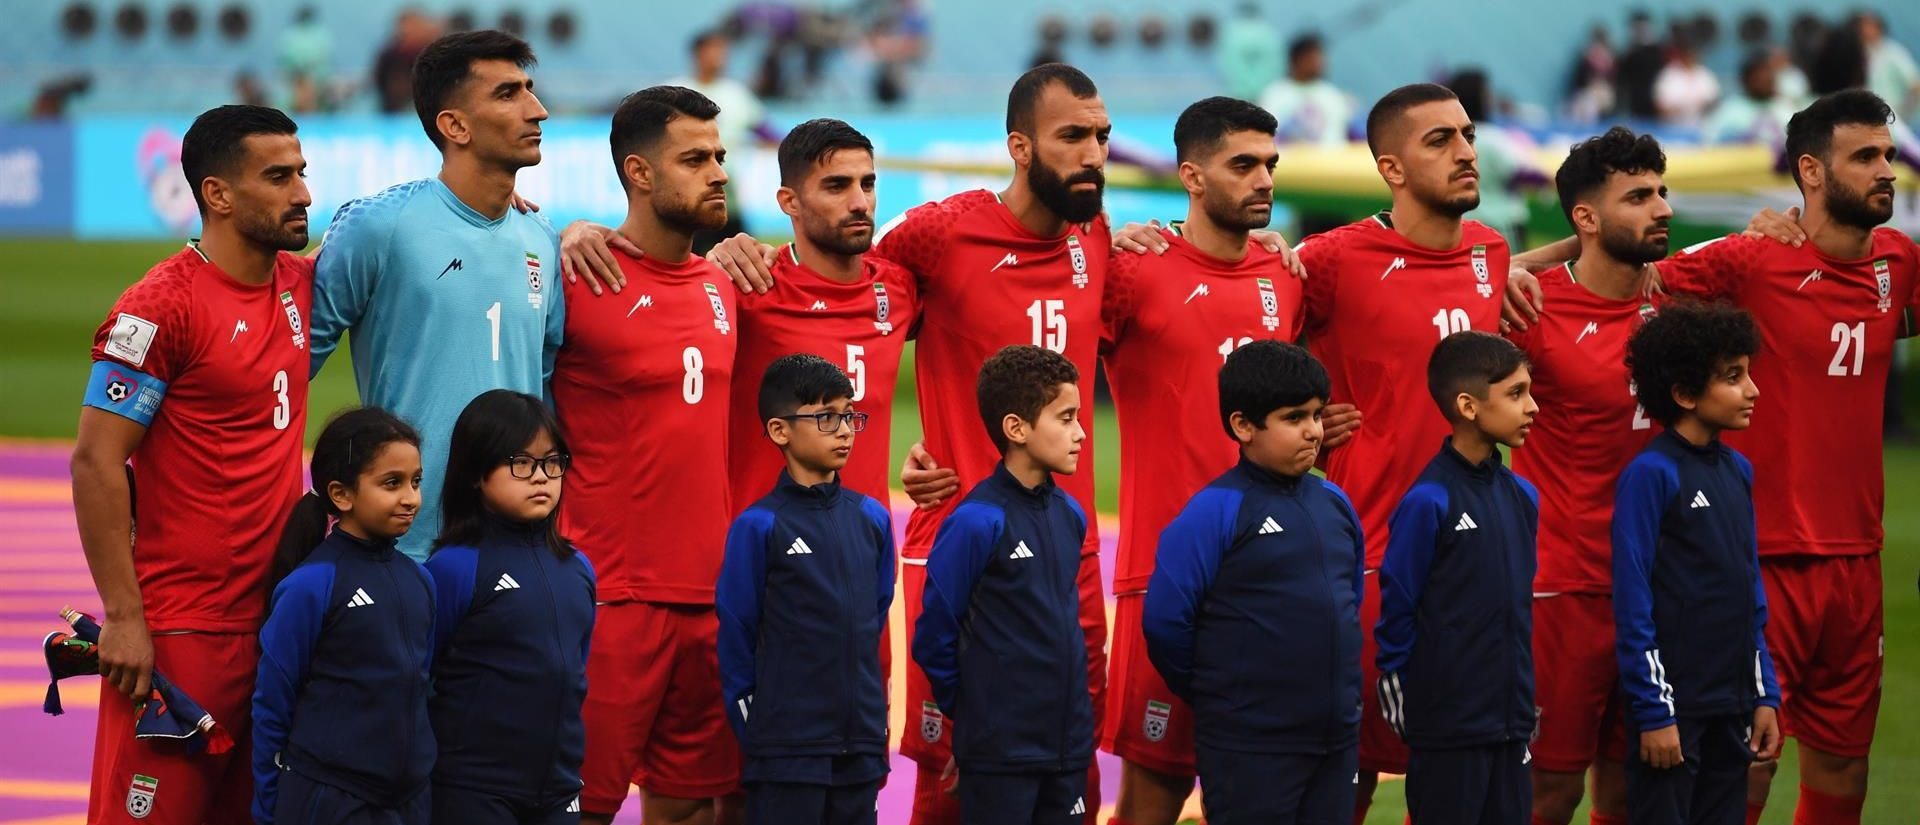 Los jugadores iraníes, en silencio durante su himno